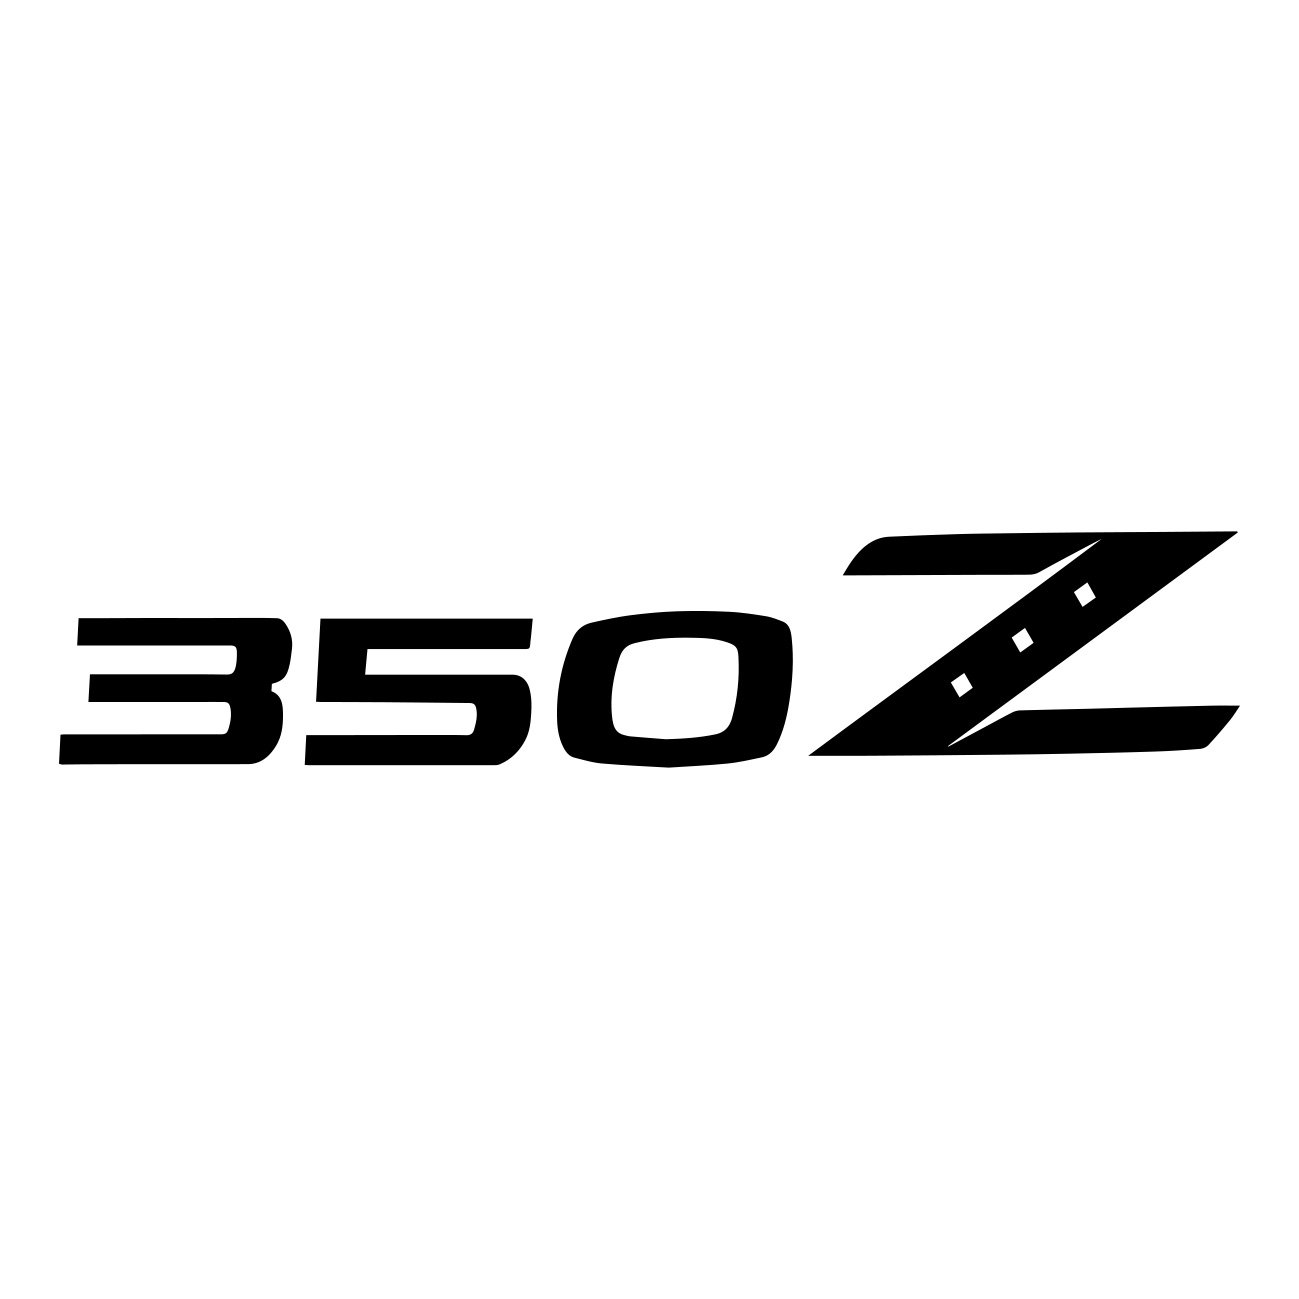 nissan 350z logo